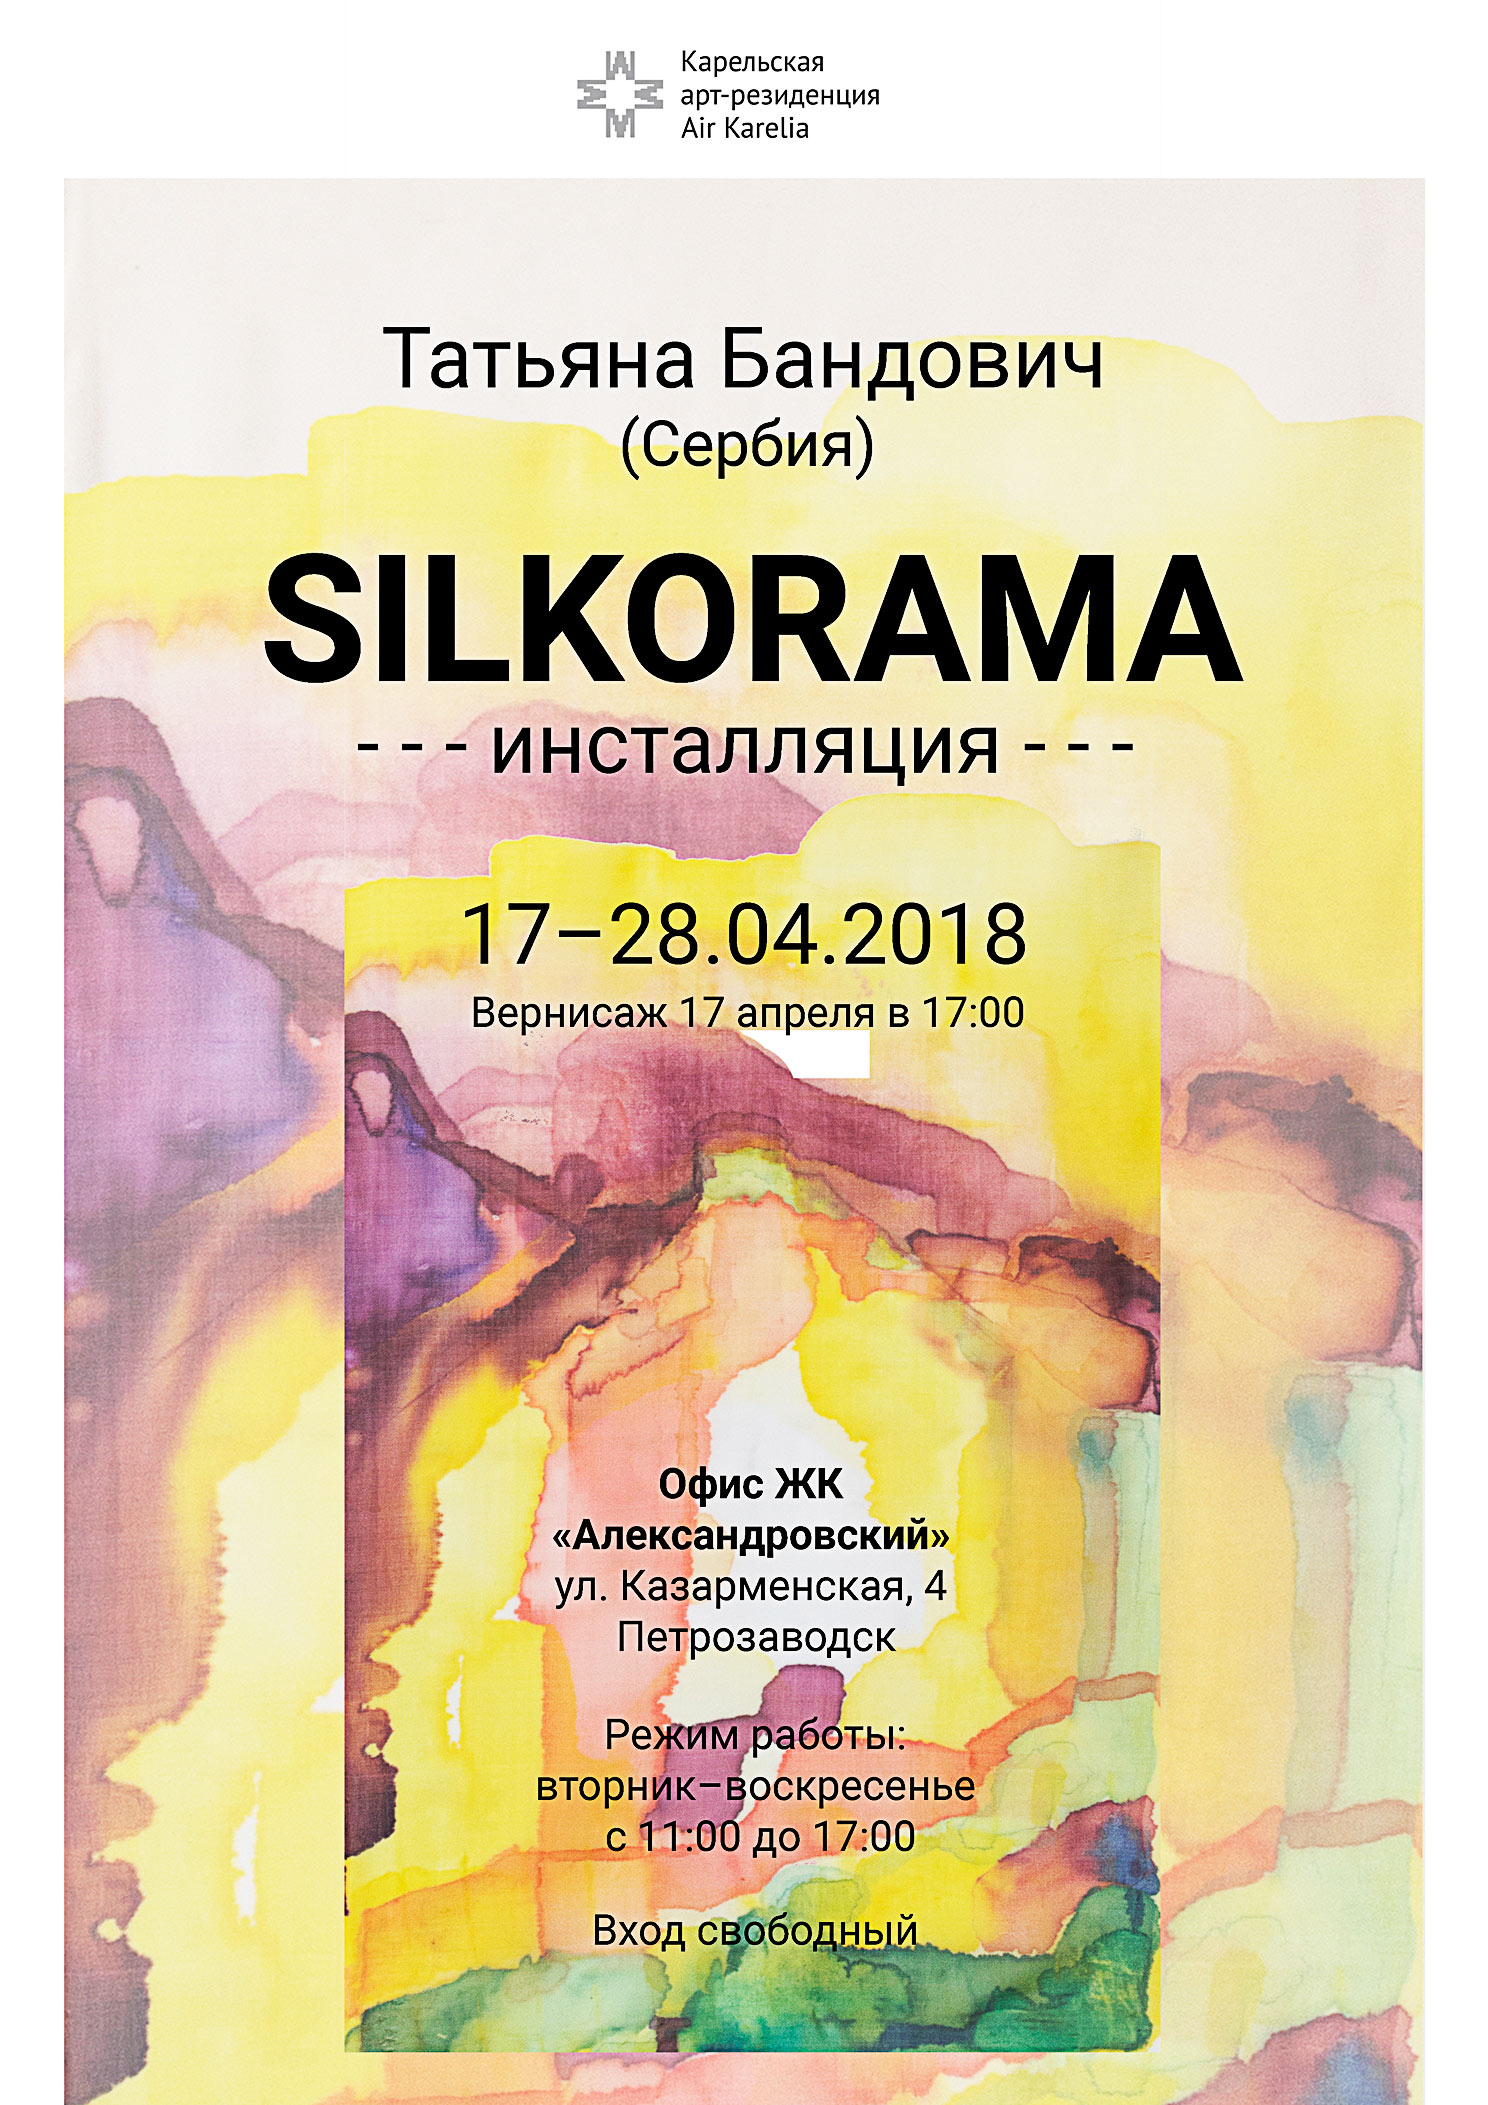 Открытие инсталляции SILKORAMA Татьяны Бандович (Сербия)